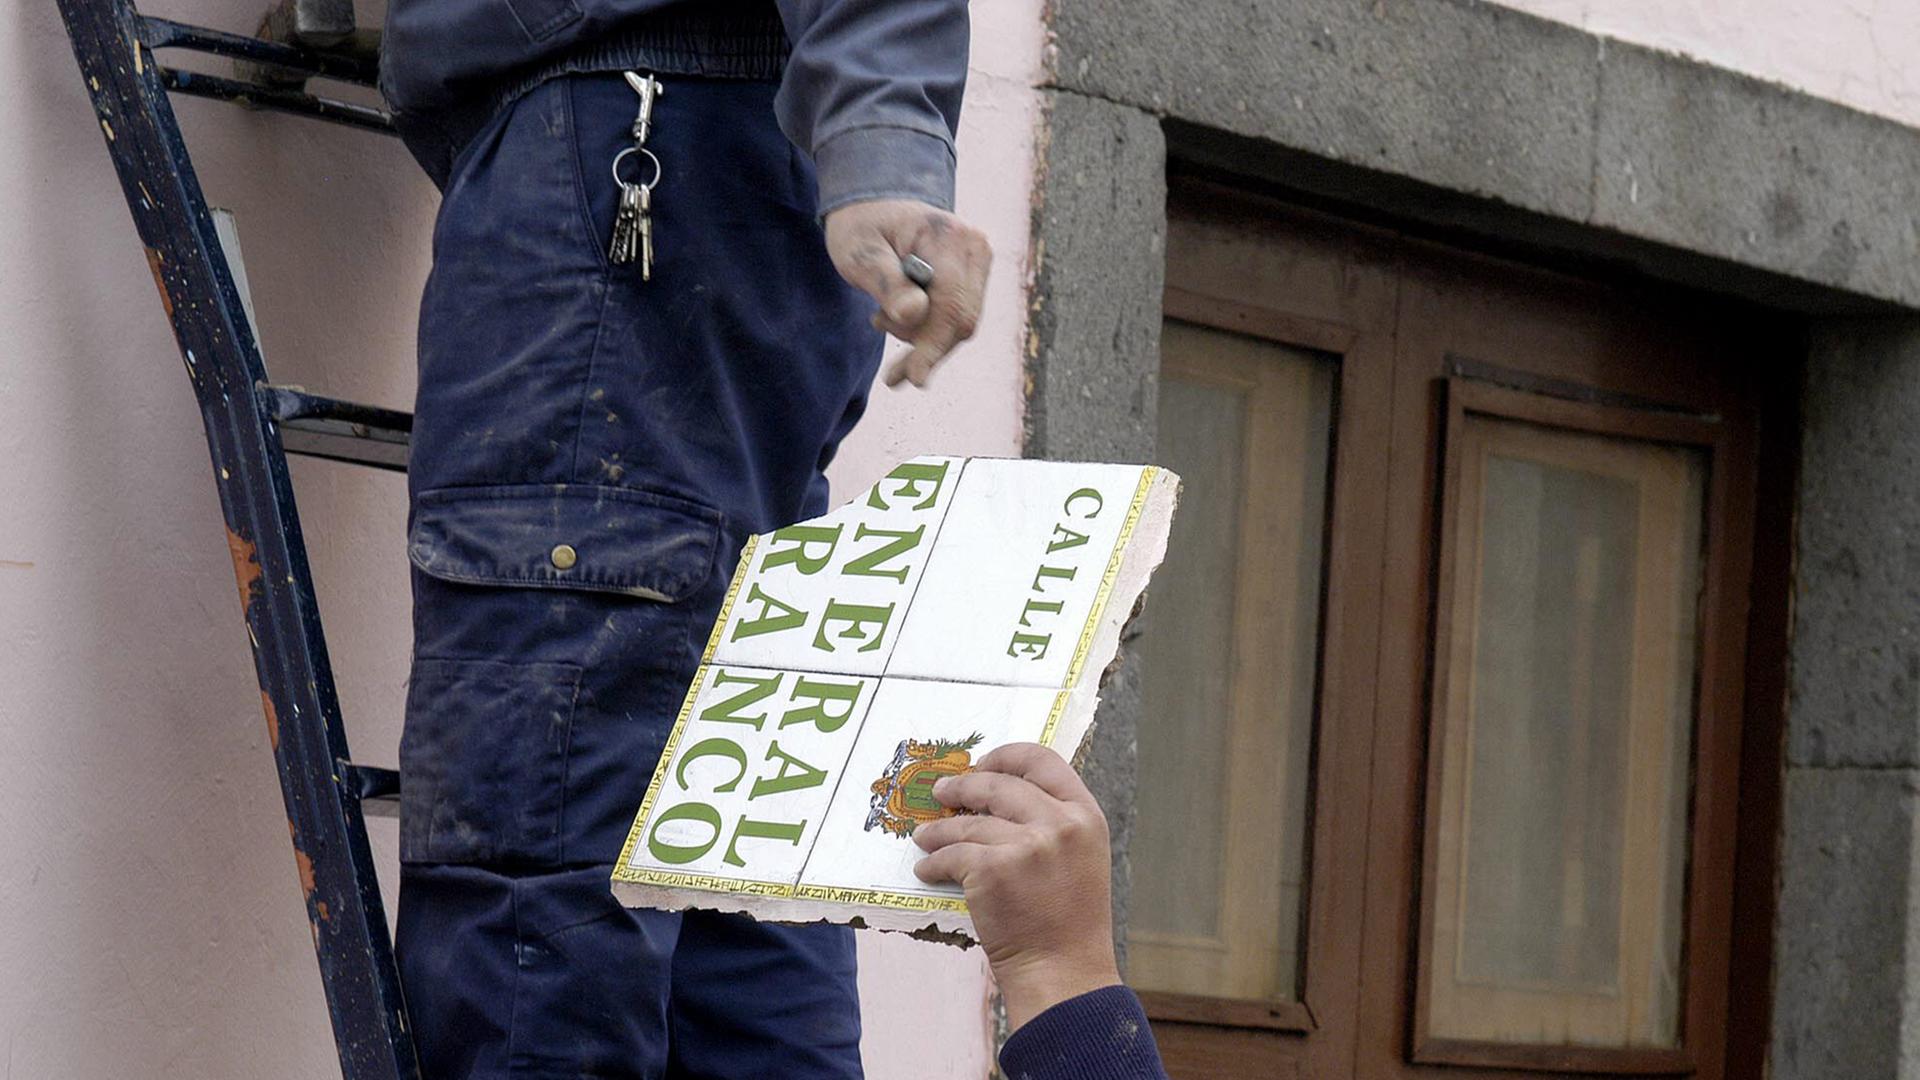 Arbeiter wechseln ein Straßenschild aus, auf dem "Calle General Franco" steht, ein Arbeiter steht auf einer Leiter, nur seine Beine sind sichtbar, ein anderer nimmt das Schild in die Hand